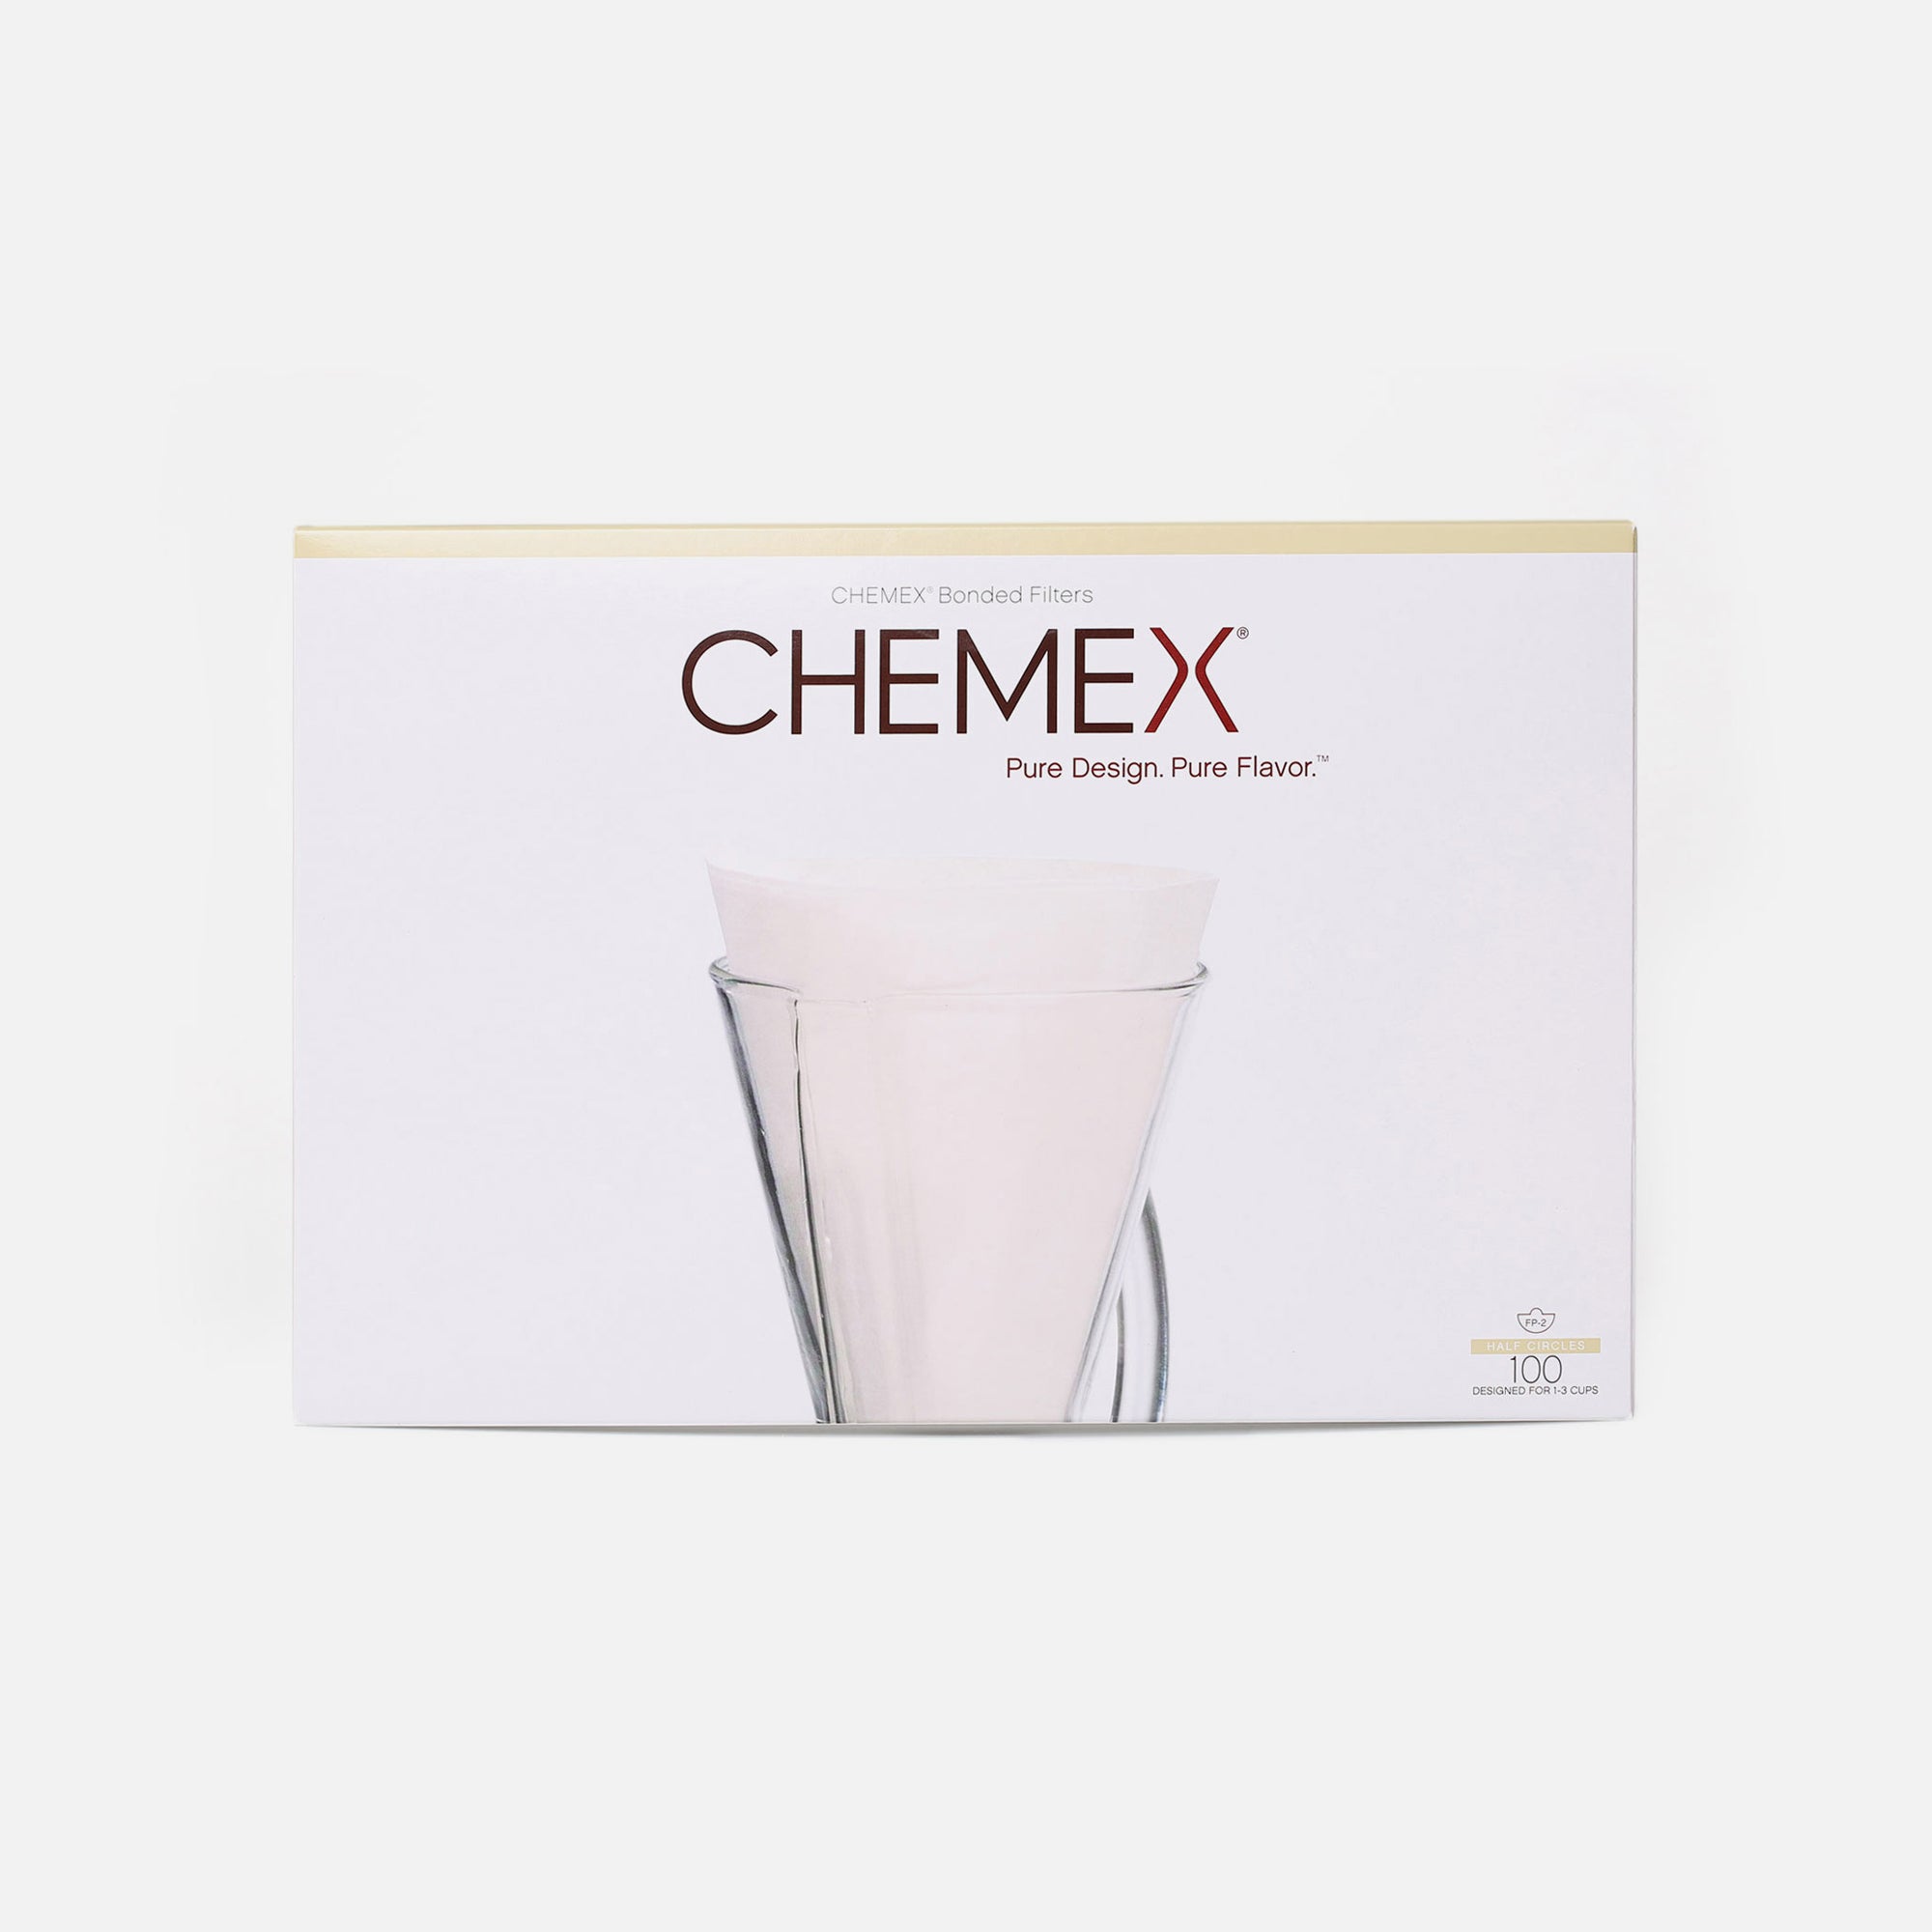 Chemex Filterpapier ungefaltet weiß - 3 Tassen